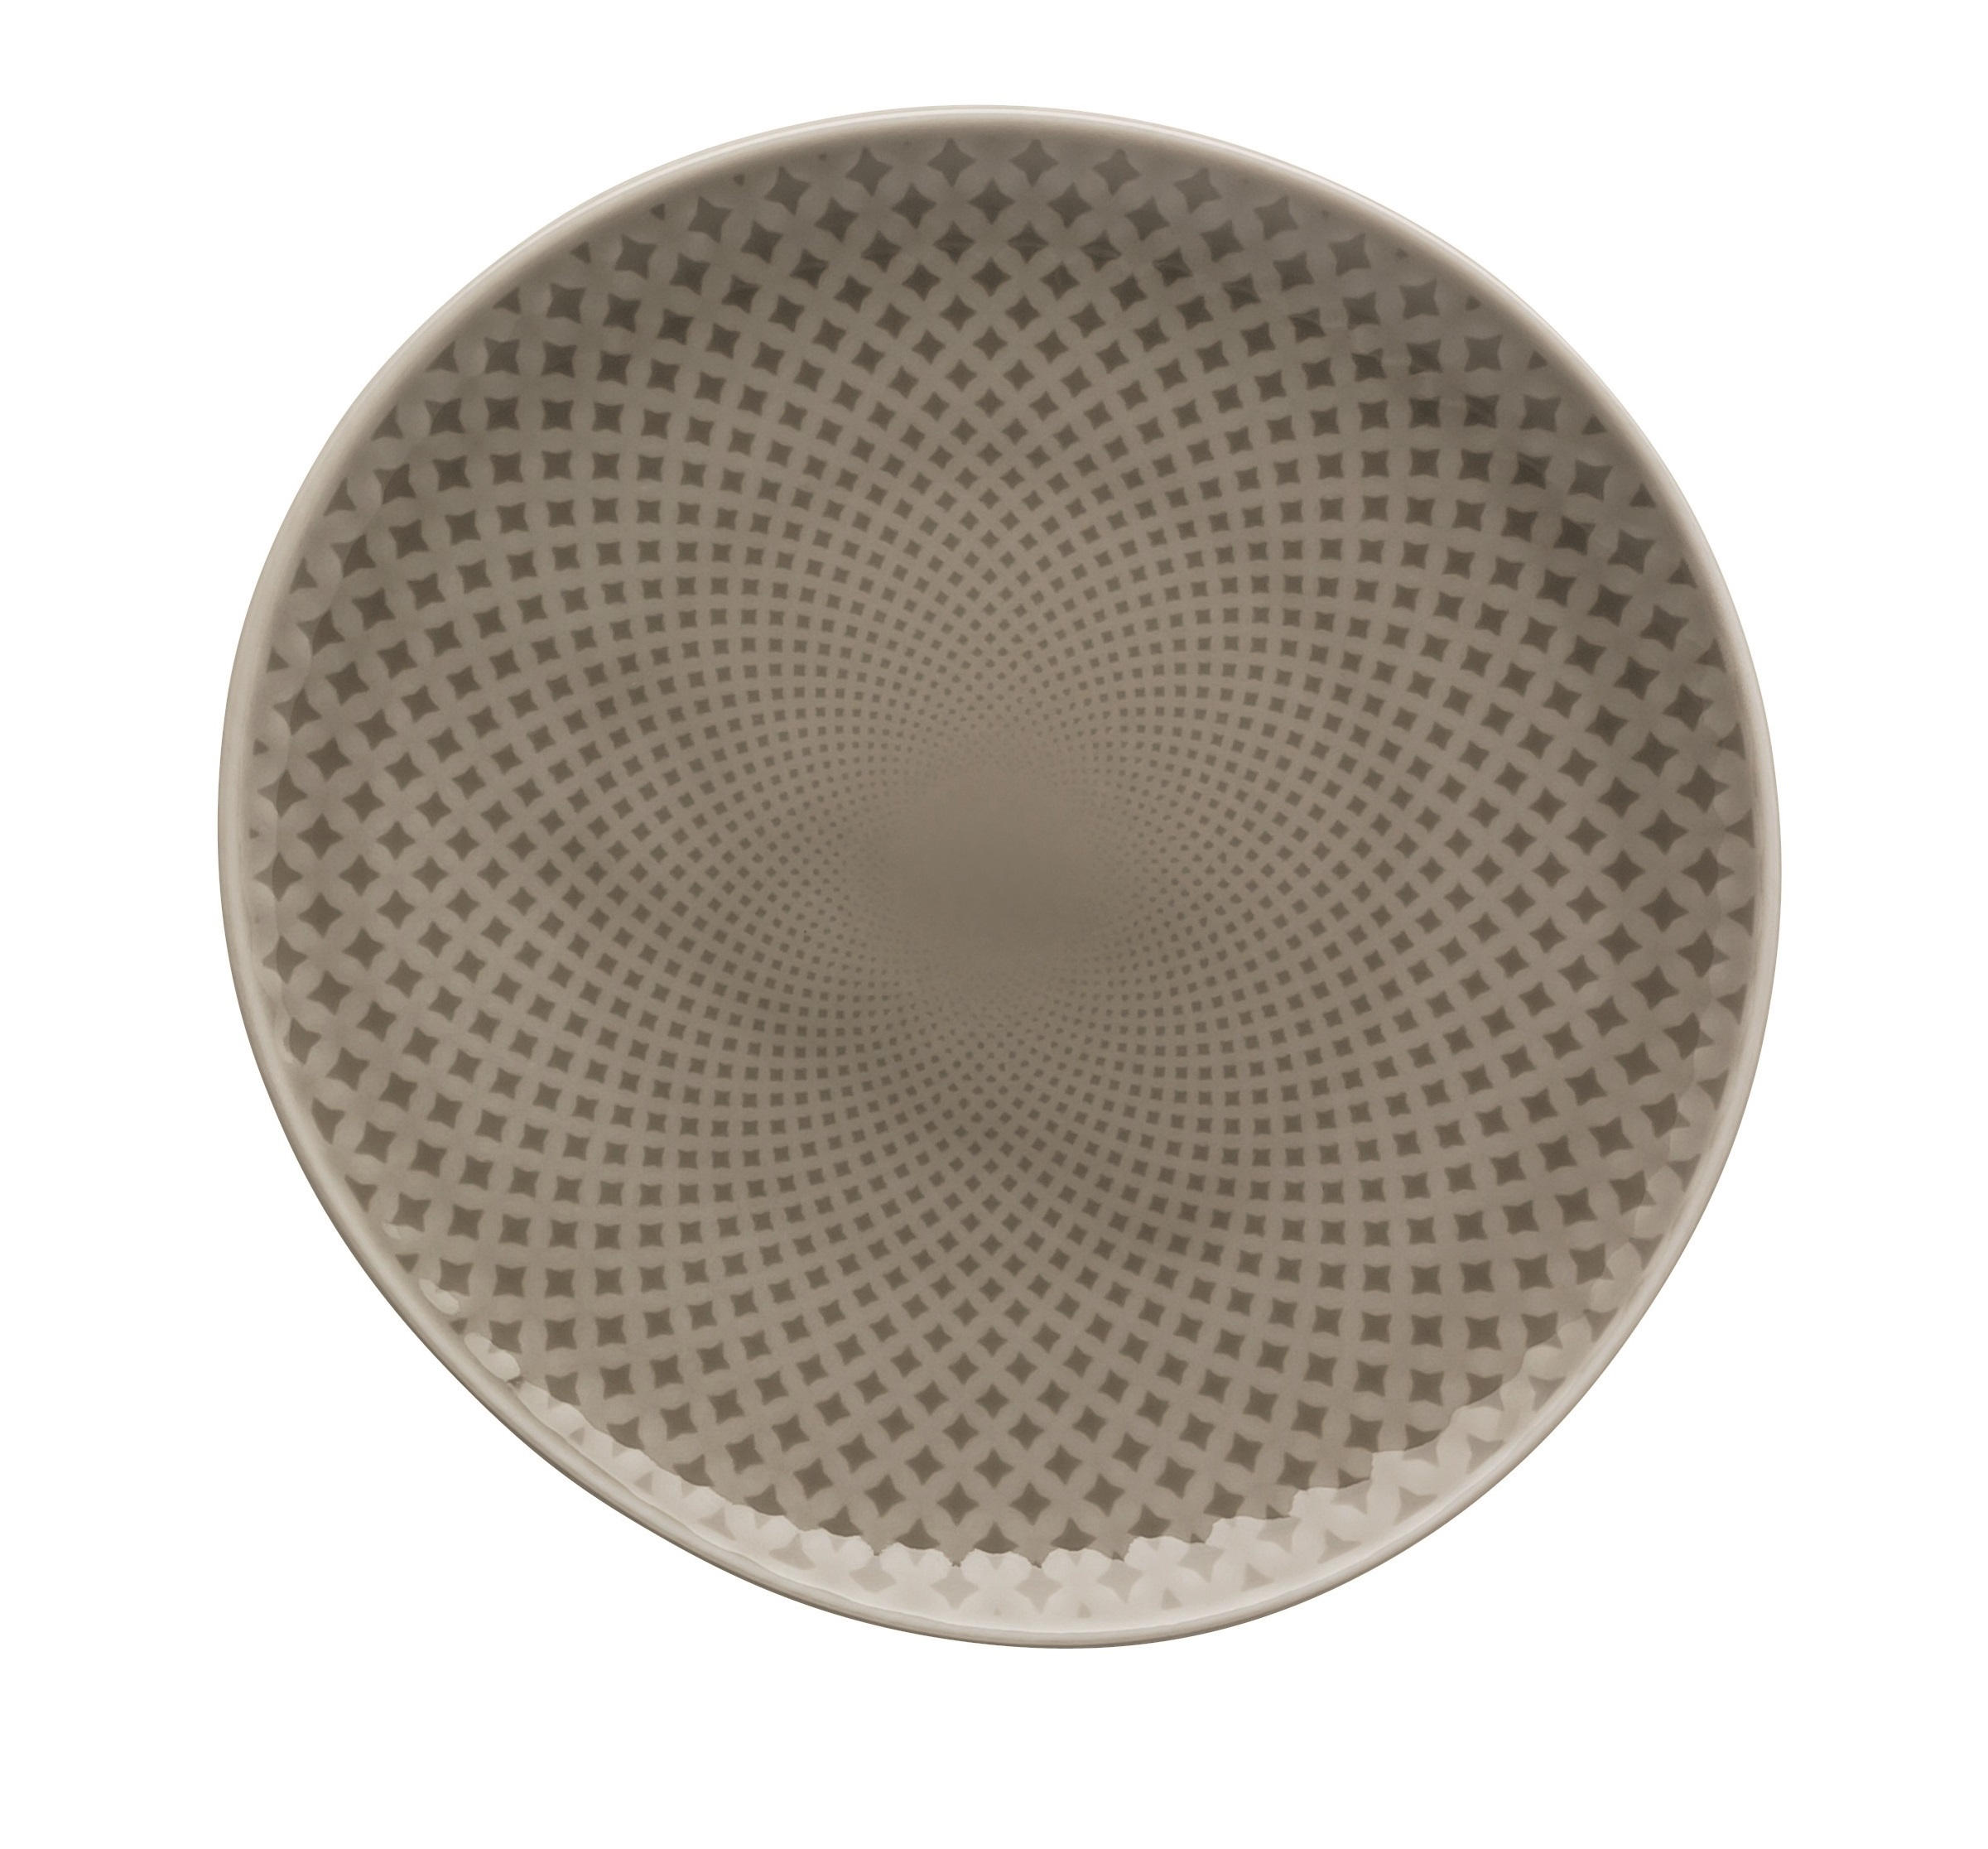 SPEISETELLER Junto Pearl Grey 27 cm  - Beige/Grau, LIFESTYLE, Keramik (27cm) - Rosenthal